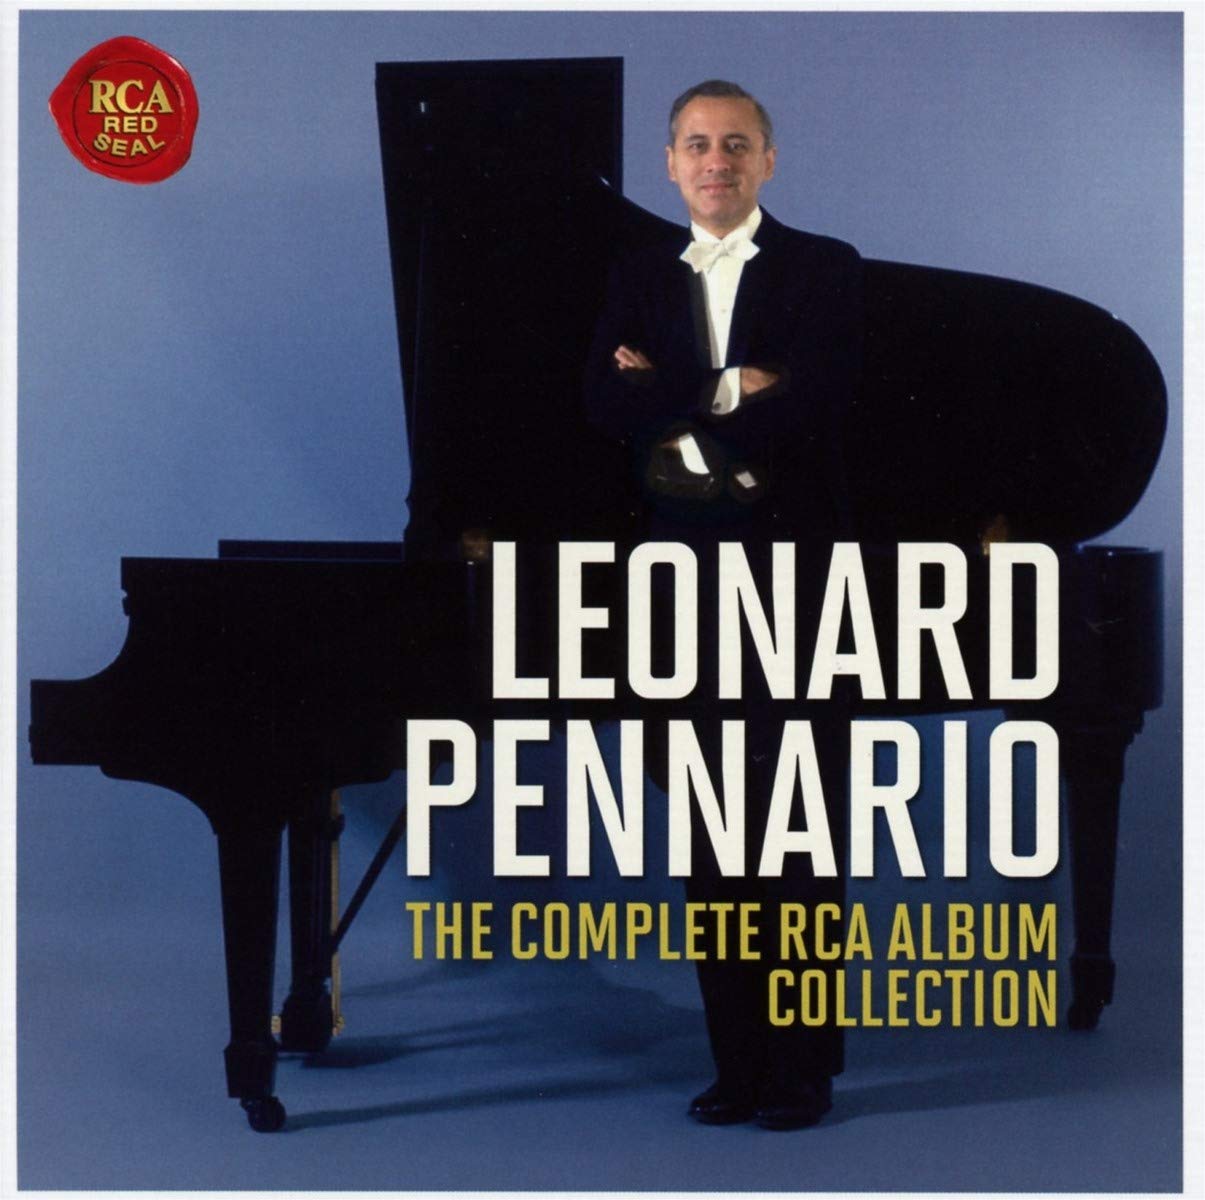 The Complete Rca Album Collection | Leonard Pennario Album: poza noua